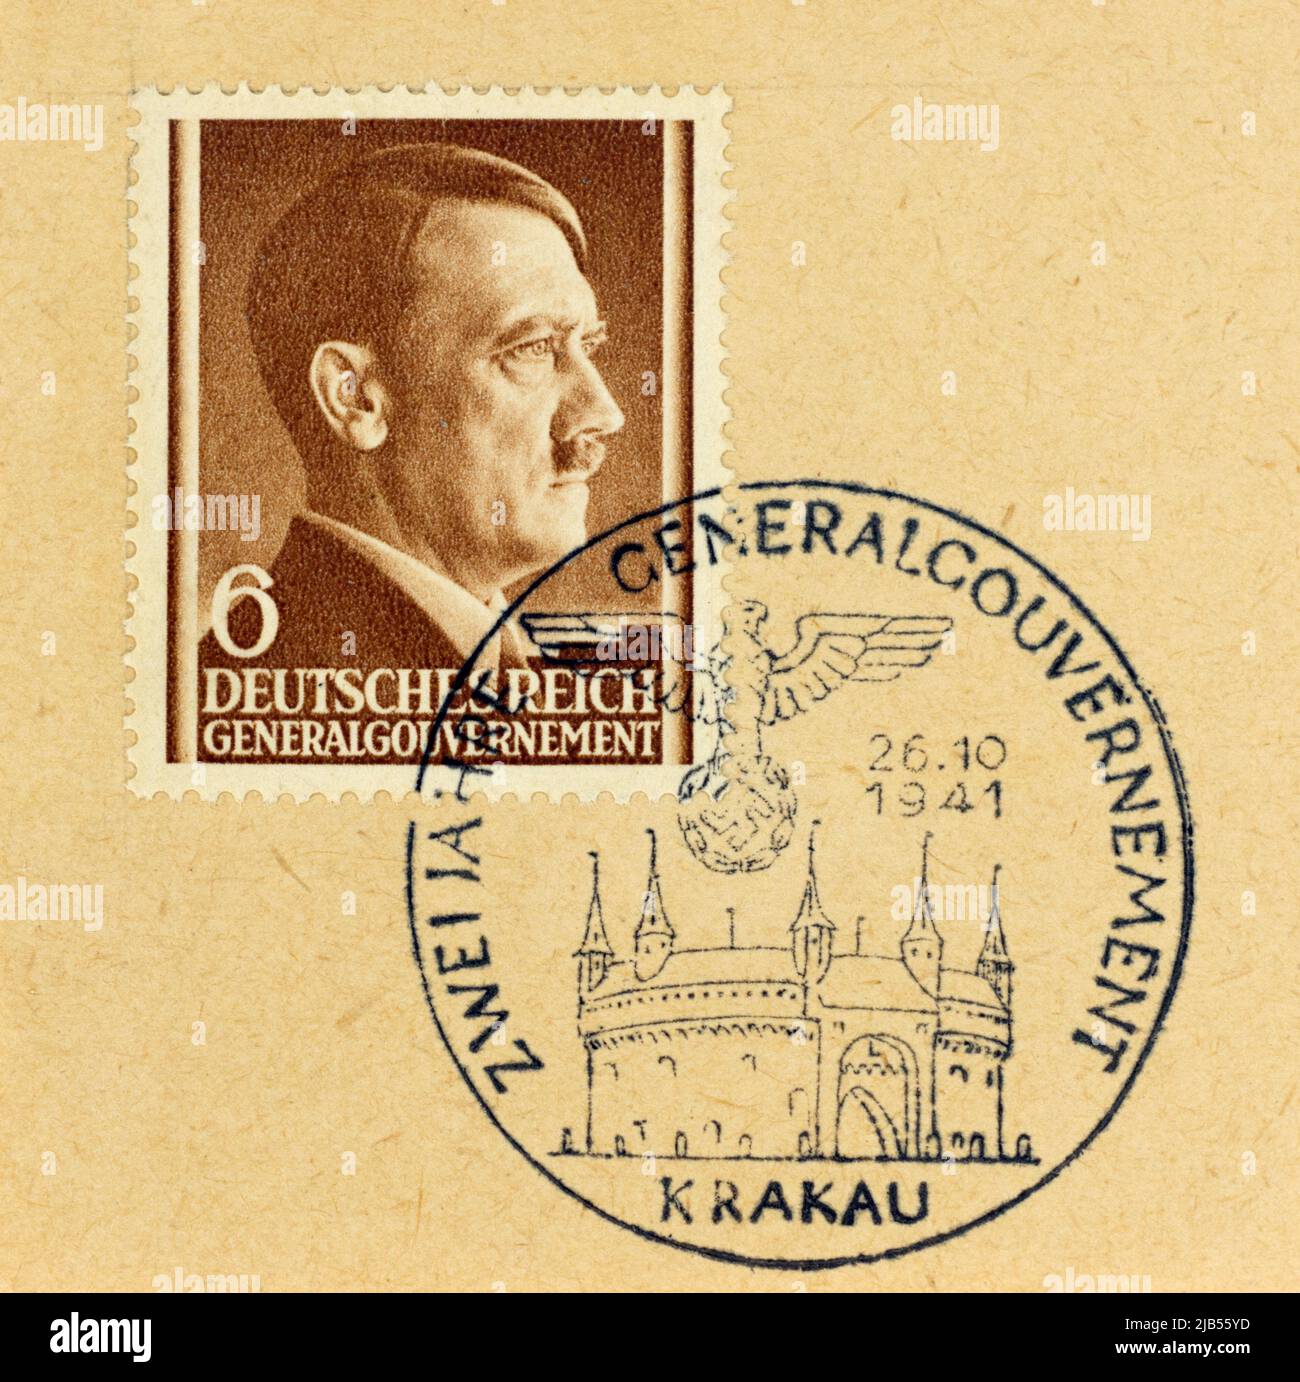 Ein Stempel des Generalgouvernement aus dem 1941. Reich, ausgestellt von Adolf Hitler, mit einem Stempel aus Krakau, 1941. Stockfoto